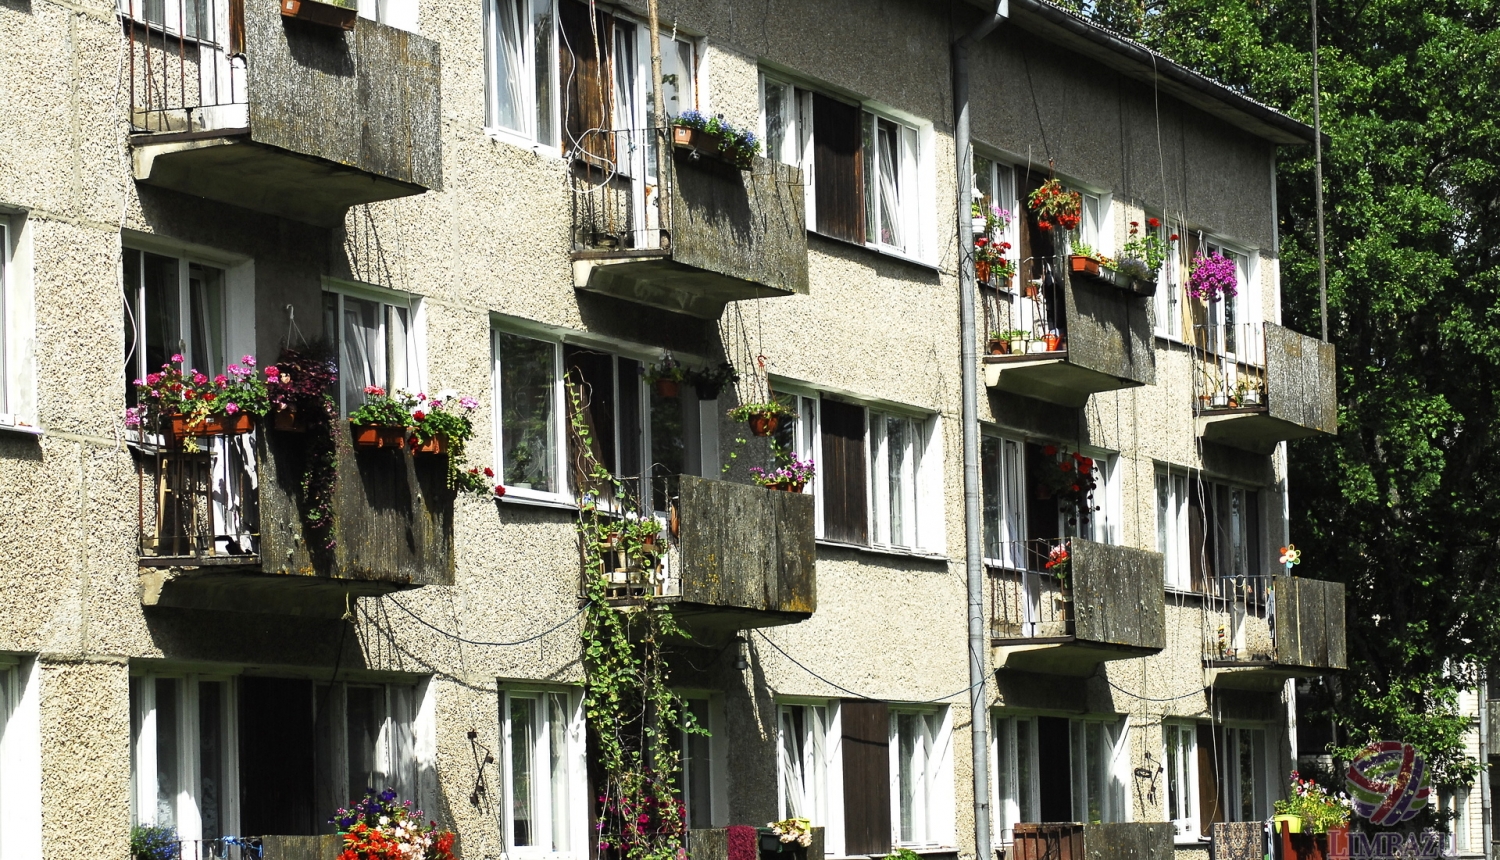 Daudzdzīvokļu dzīvojamo māju īpašniekiem iespēja saņemt pašvaldības līdzfinansējumu līdz 2500 eiro pagalma labiekārtošanai un mājas atjaunošanai vai pārbūvei